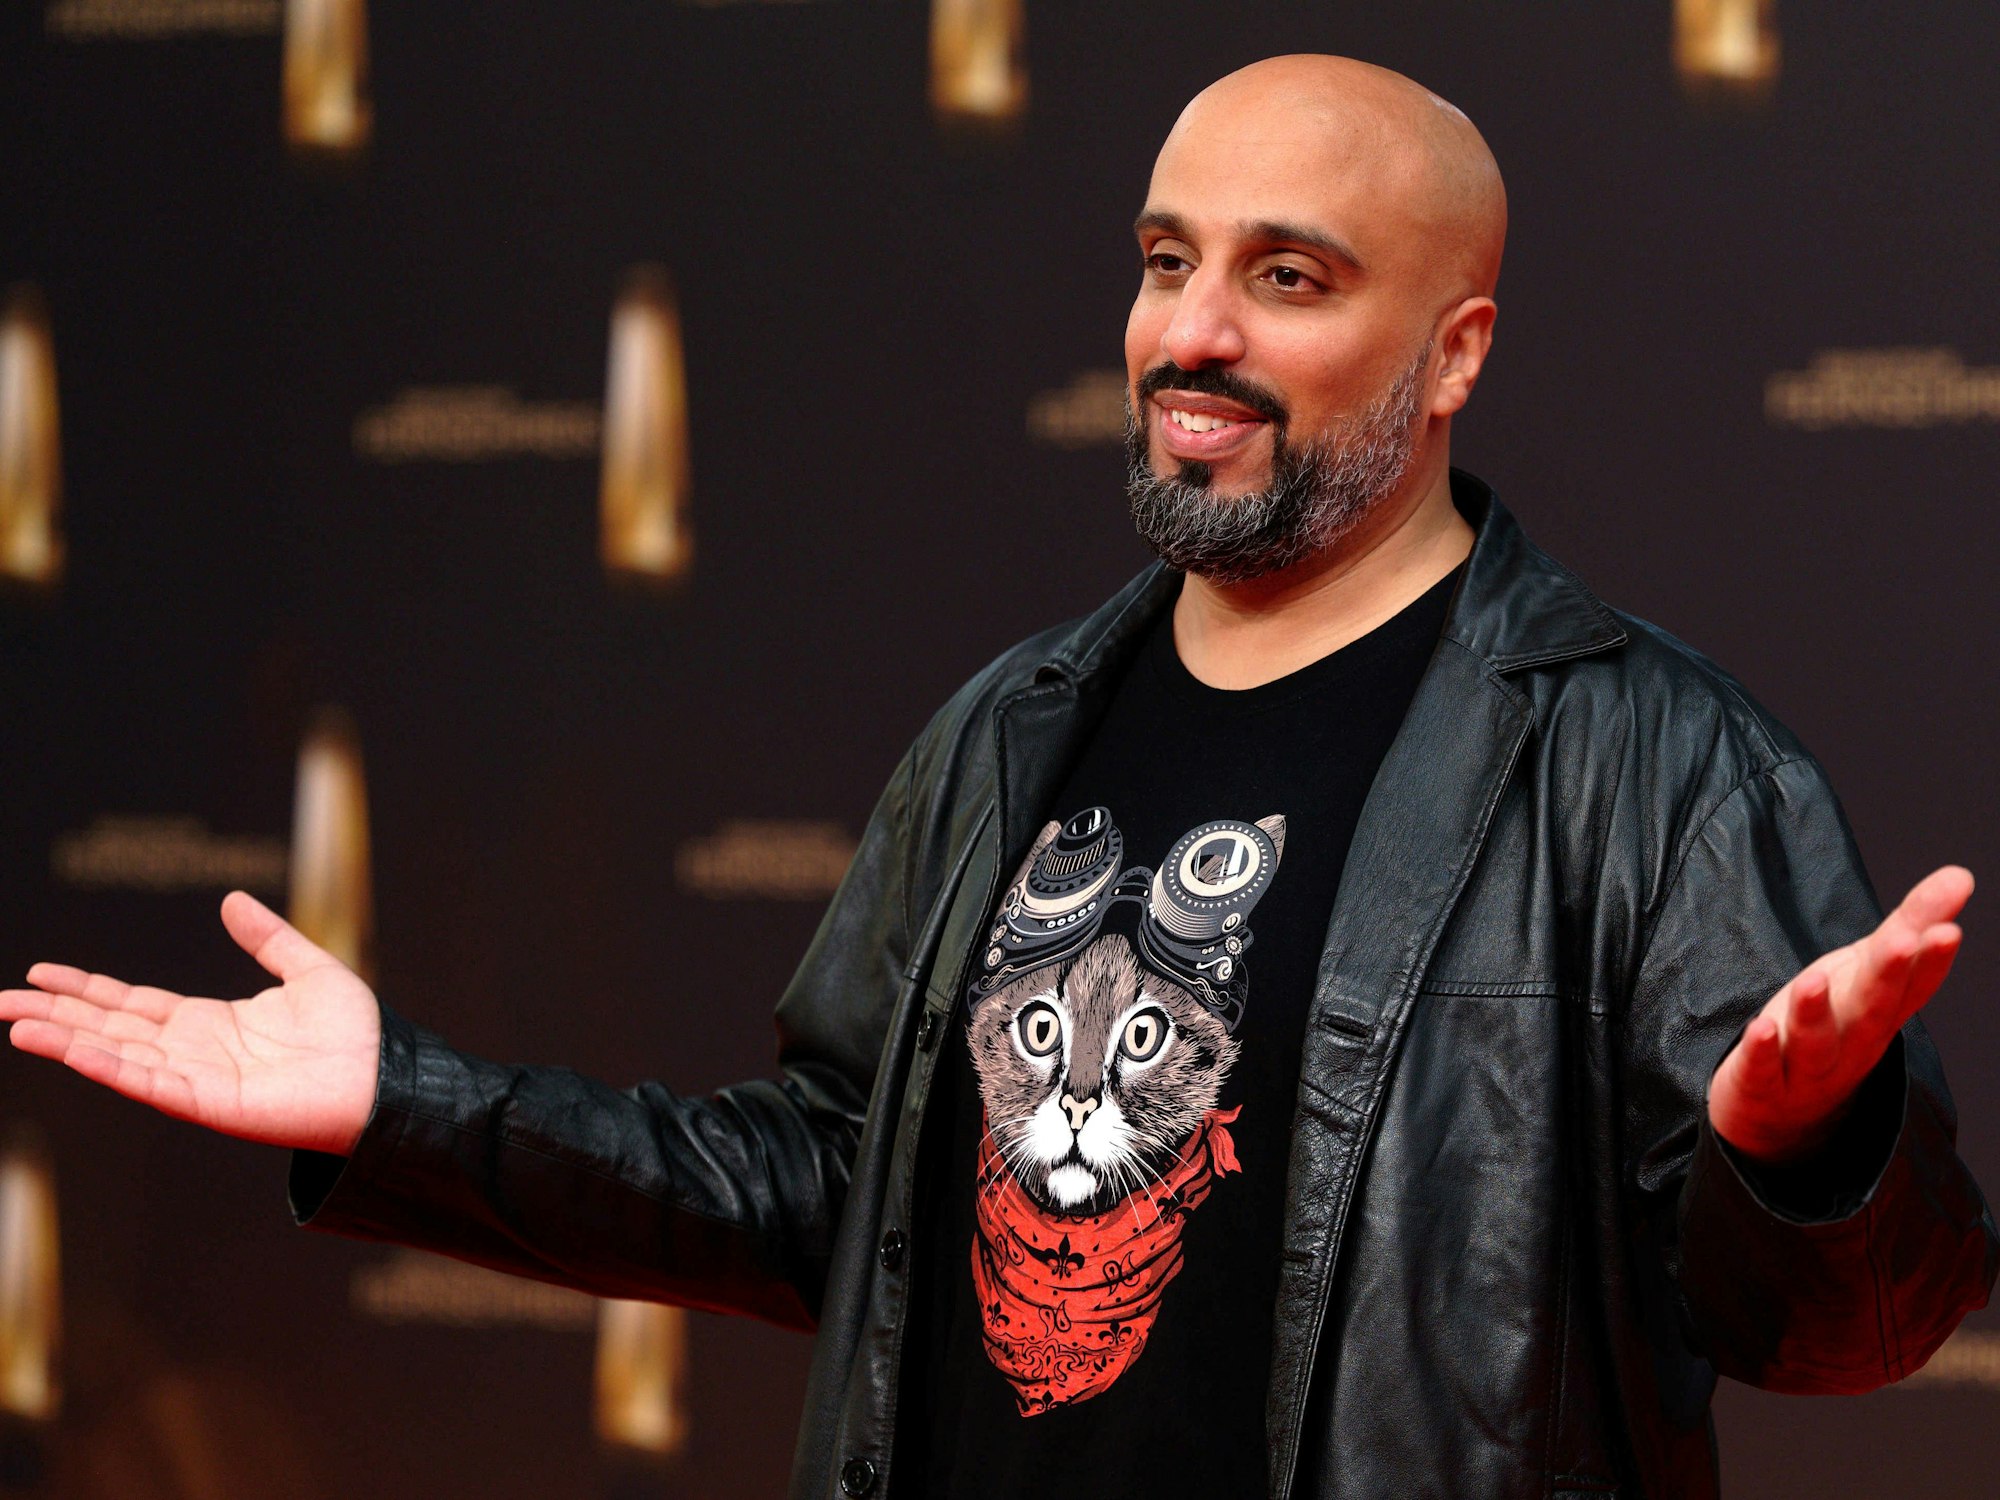 Der Comidian Abdelkarim kommt zur Verleihung vom Deutschen Fernsehpreis 2022 auf die Bühne und grinst.